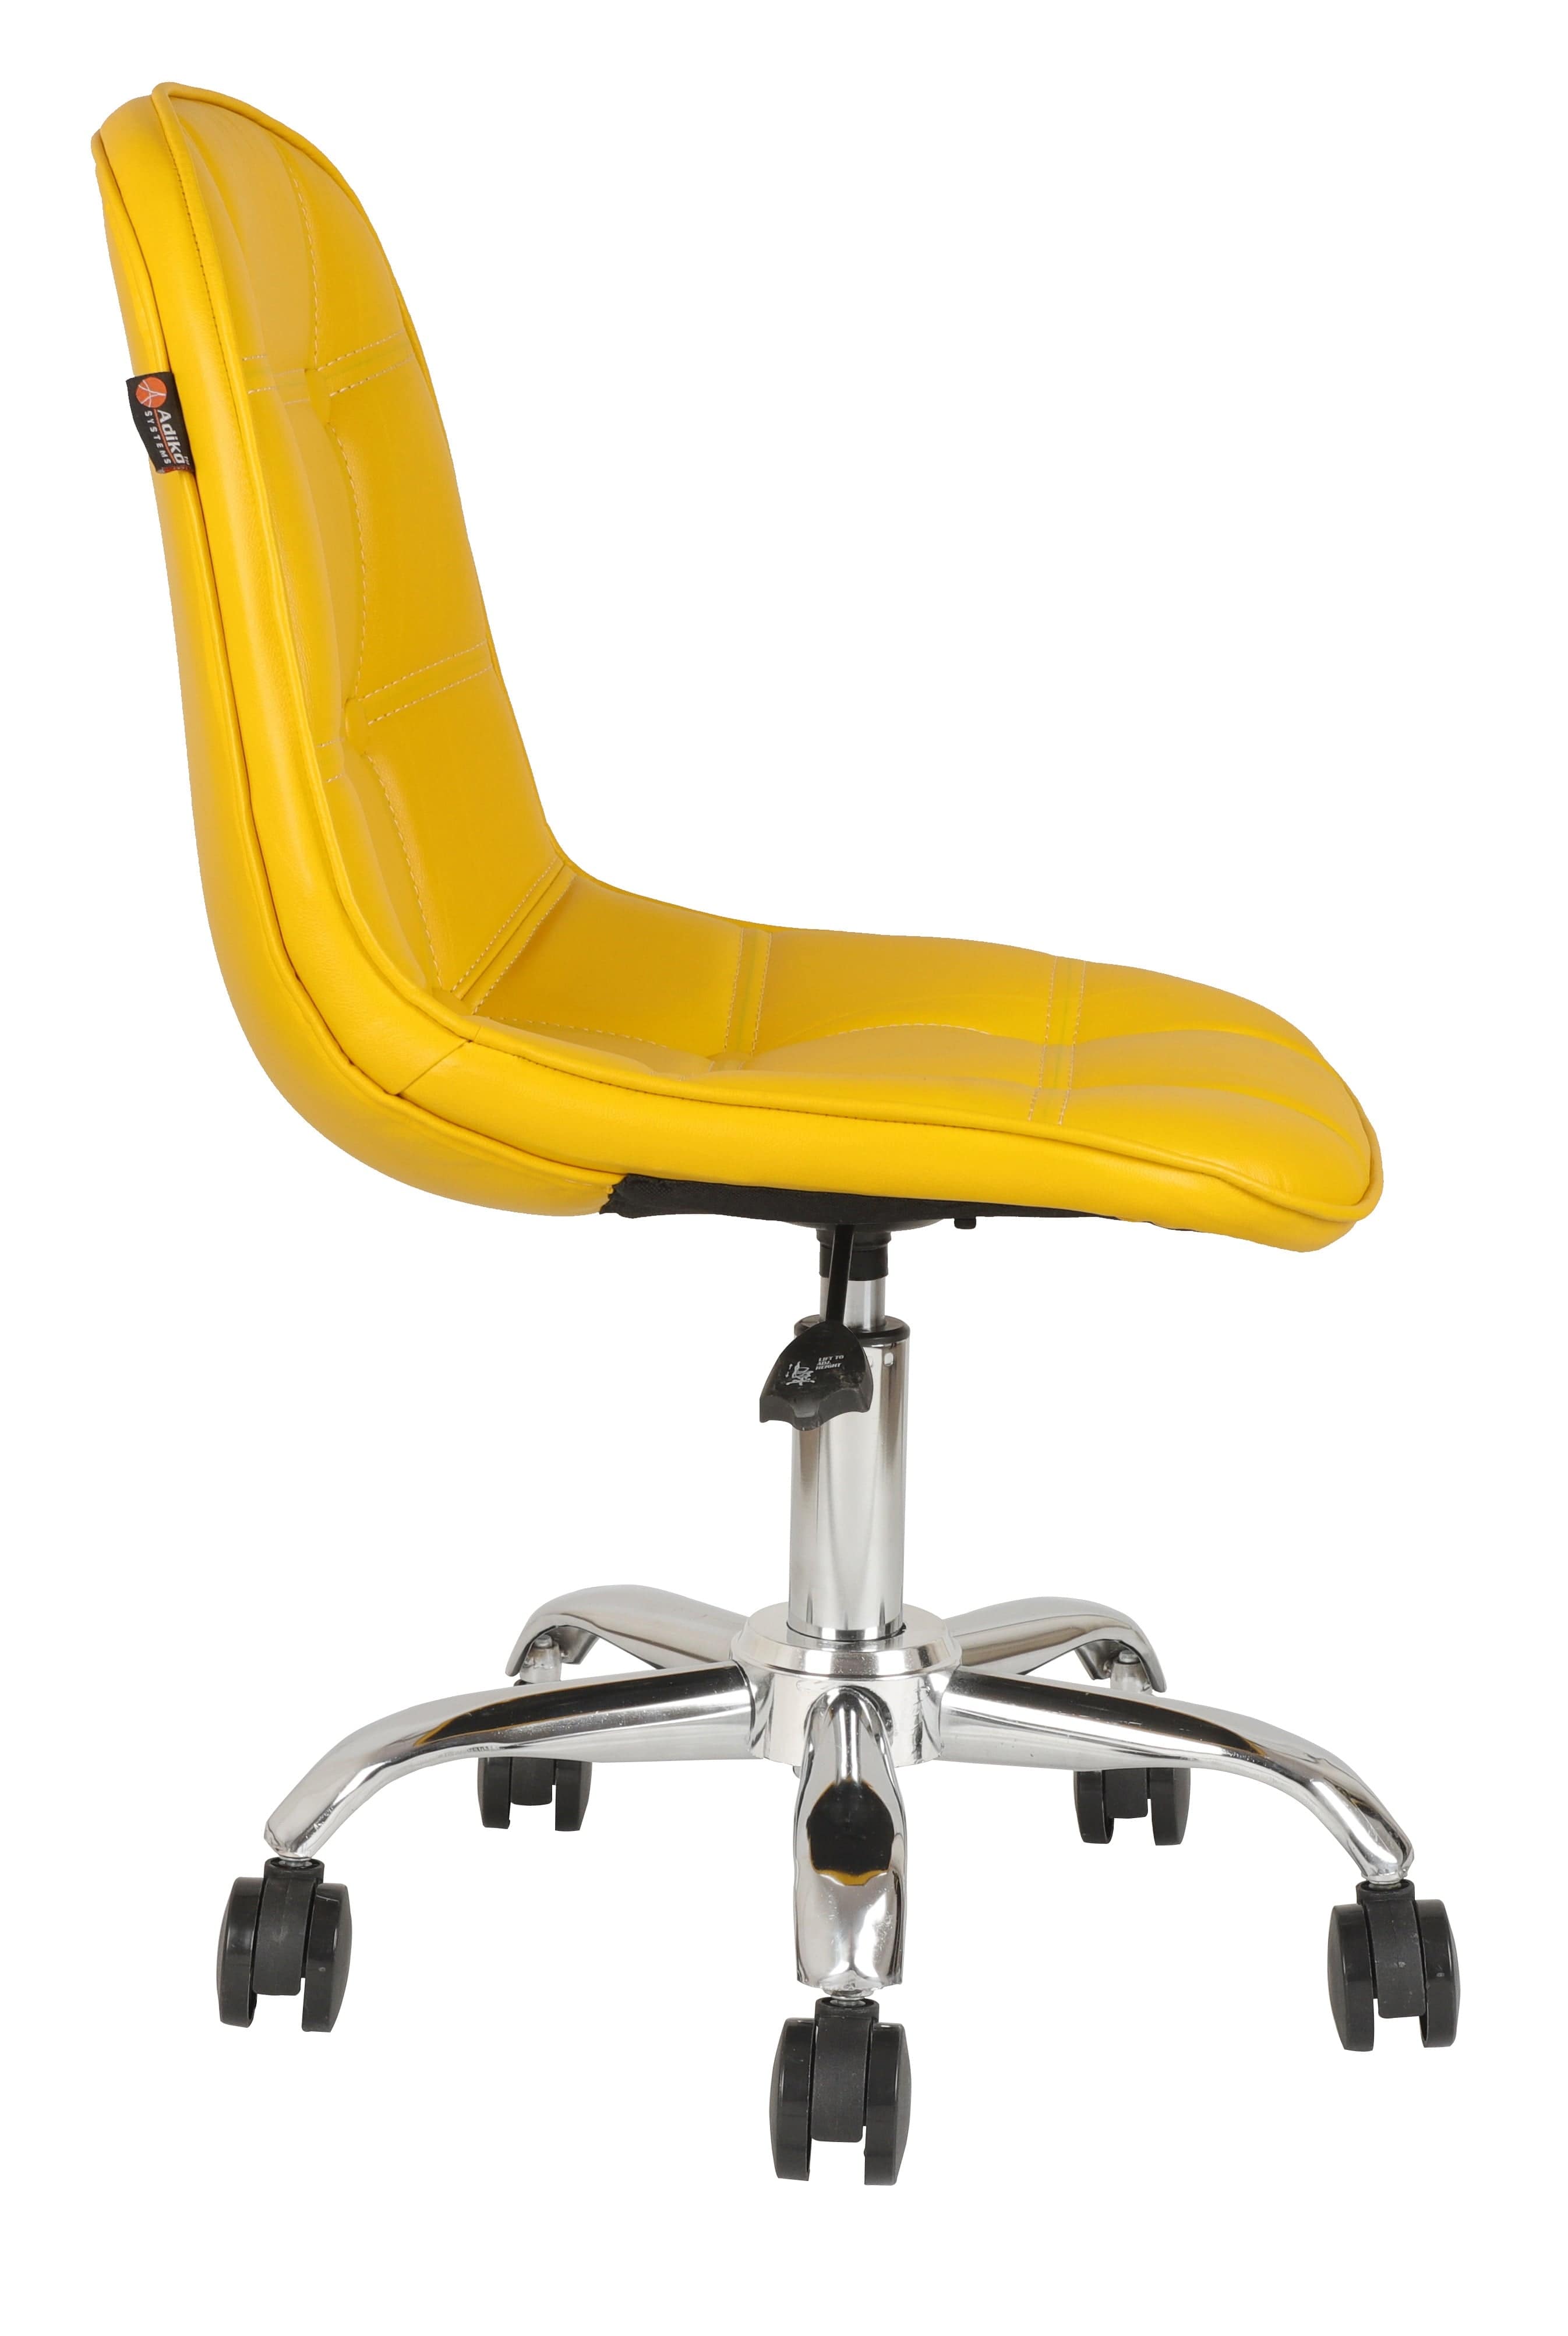 Adiko Lounge Chair in Yellow